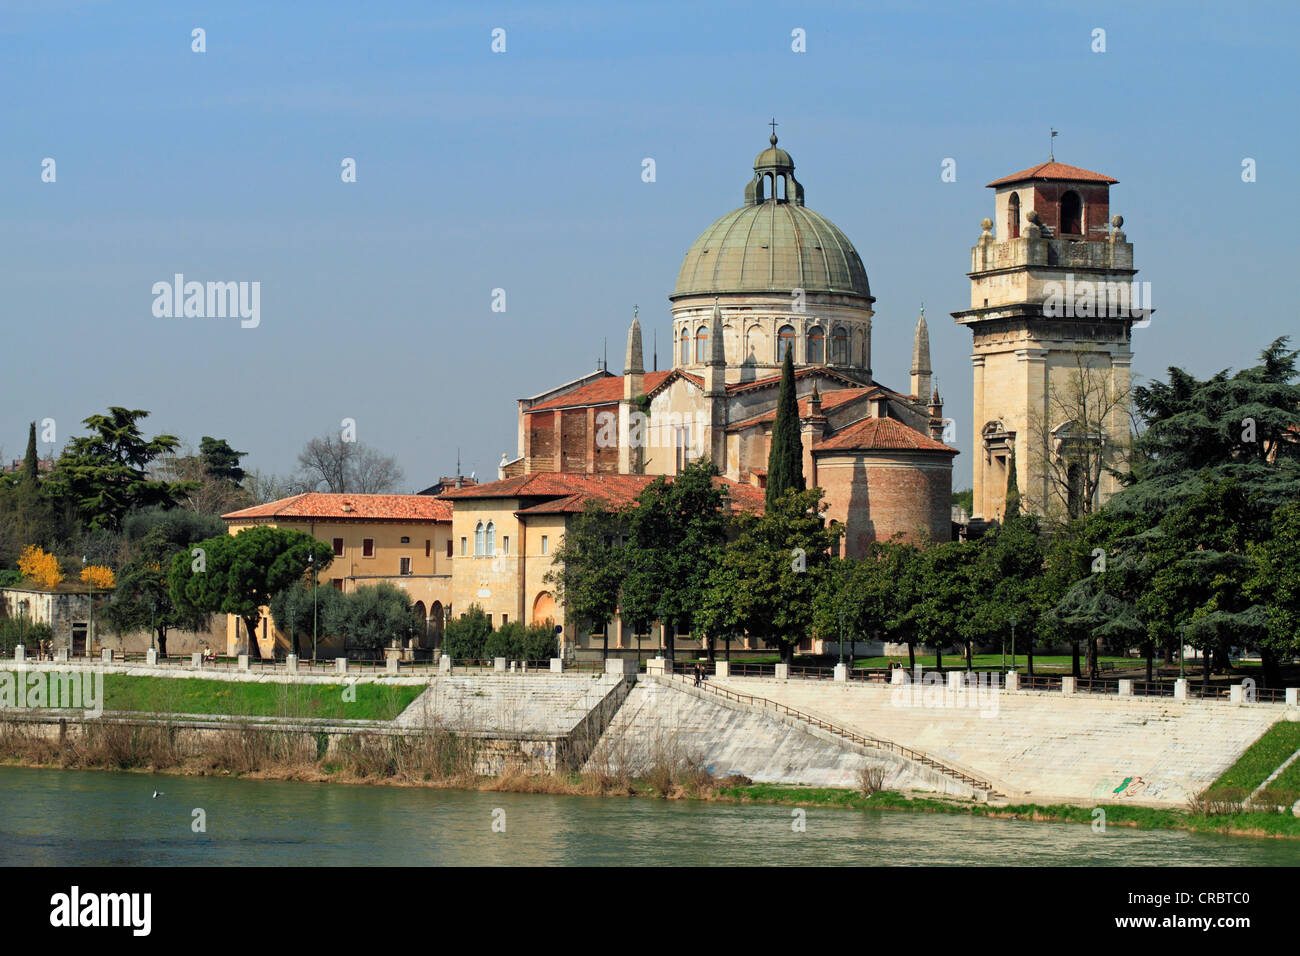 Chiesa di San Giorgio in Braida, Castel San Pietro, Verona, Veneto, Italia, Europa Foto Stock